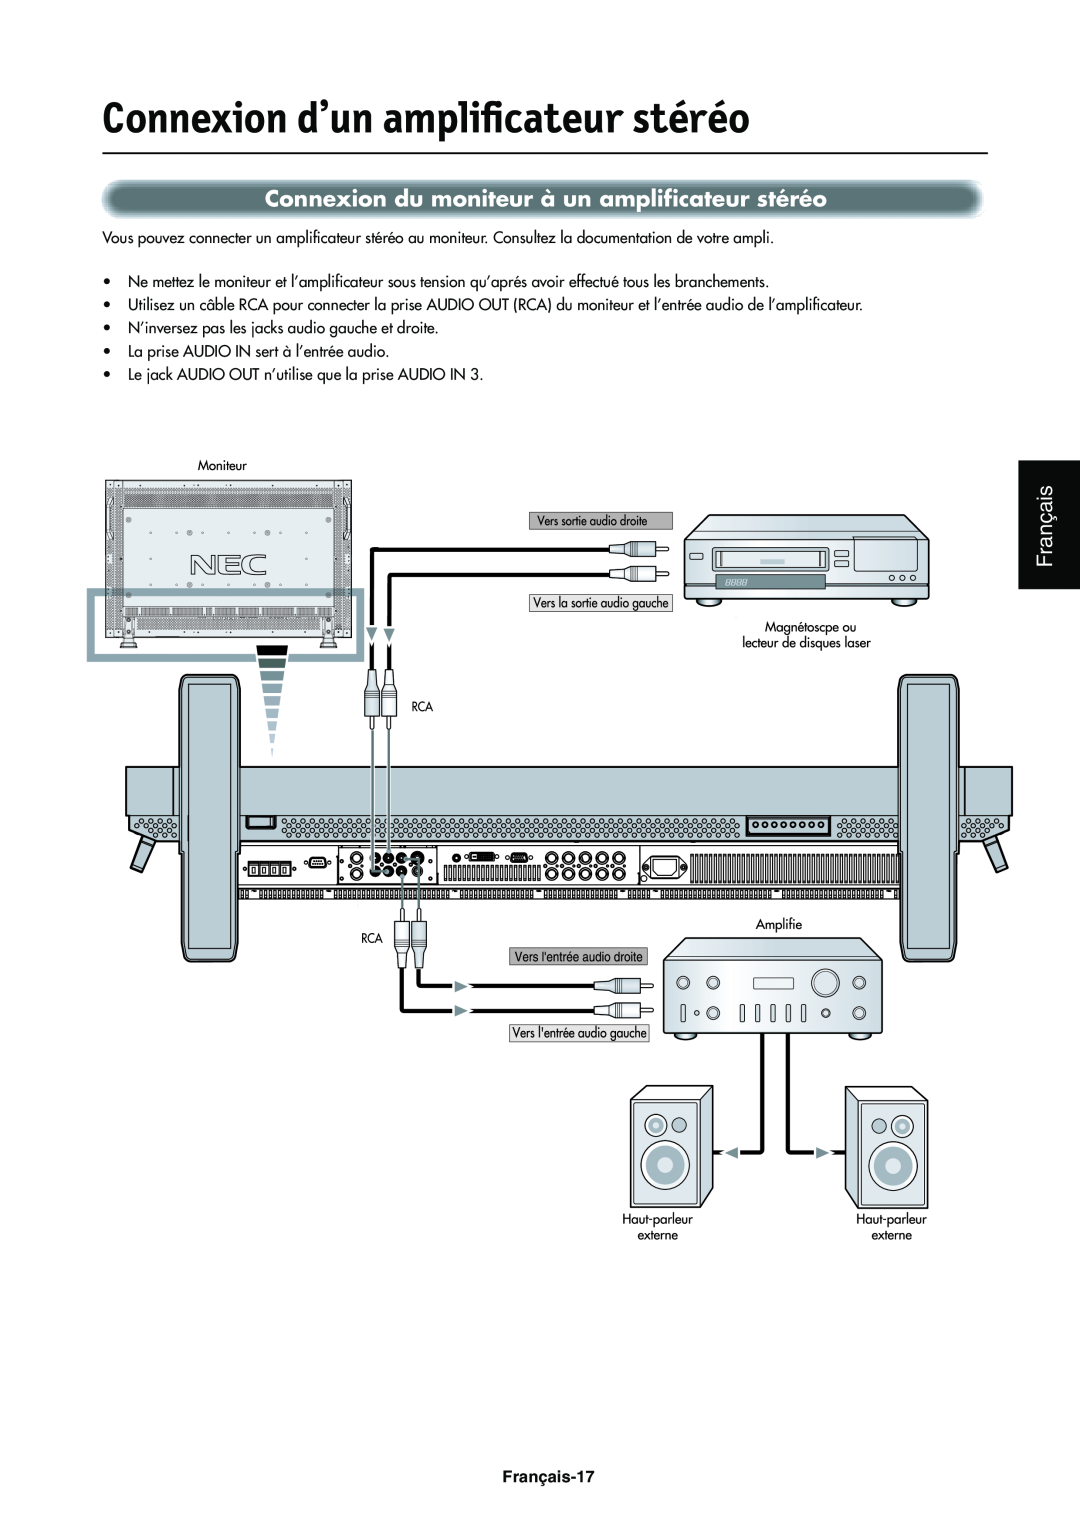 NEC LCD4000e manual Connexion d’un amplificateur stéréo, Connexion du moniteur à un amplificateur stéréo, Français-17 